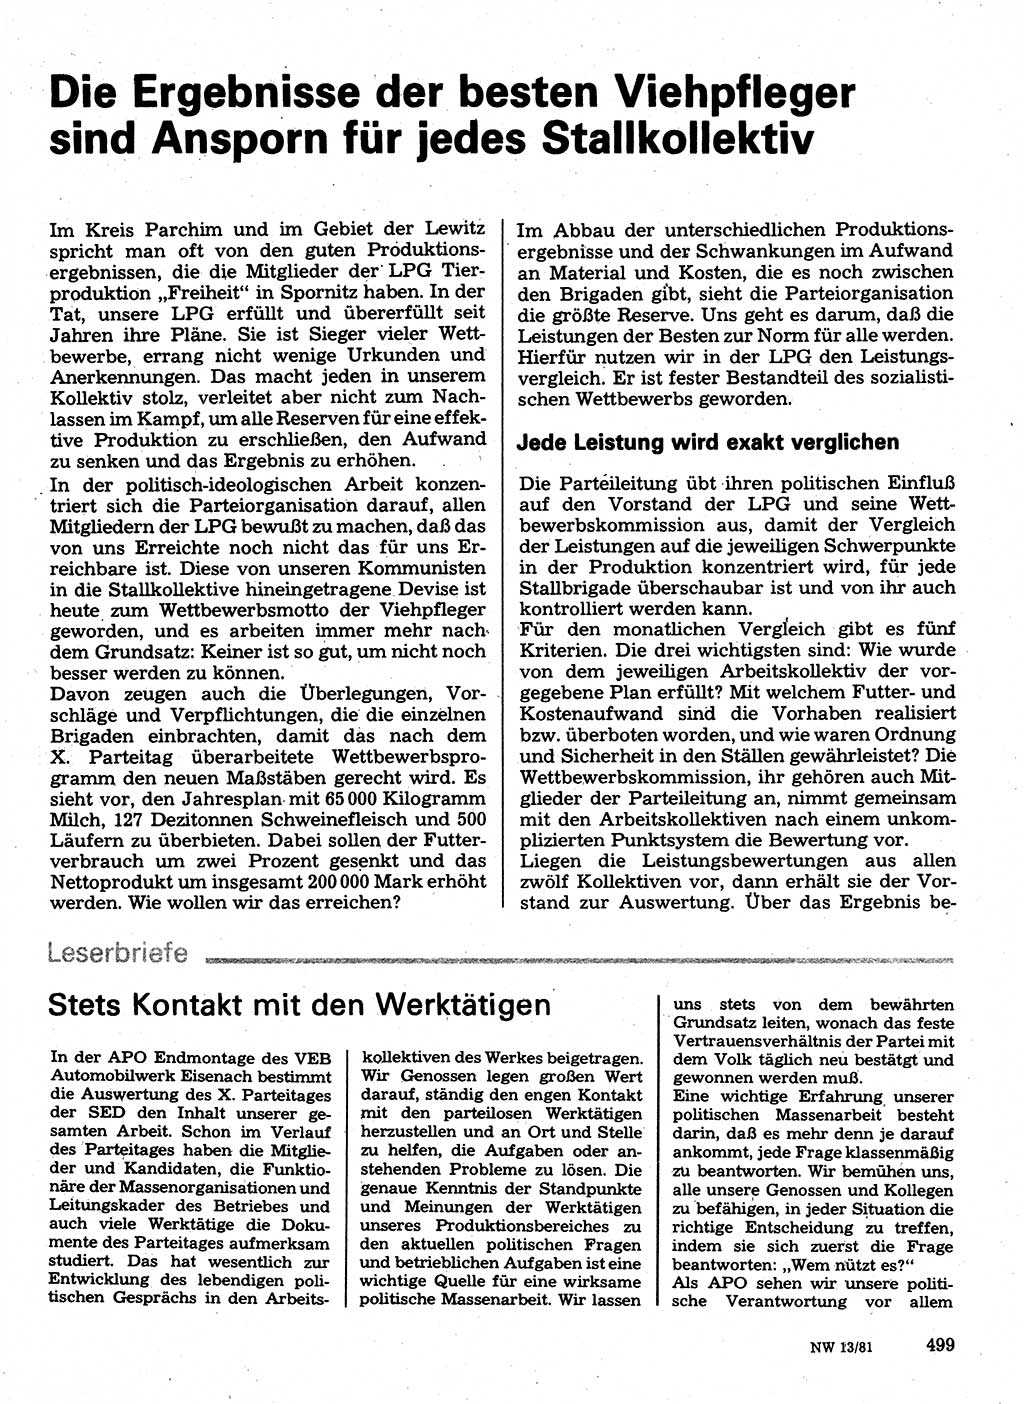 Neuer Weg (NW), Organ des Zentralkomitees (ZK) der SED (Sozialistische Einheitspartei Deutschlands) für Fragen des Parteilebens, 36. Jahrgang [Deutsche Demokratische Republik (DDR)] 1981, Seite 499 (NW ZK SED DDR 1981, S. 499)